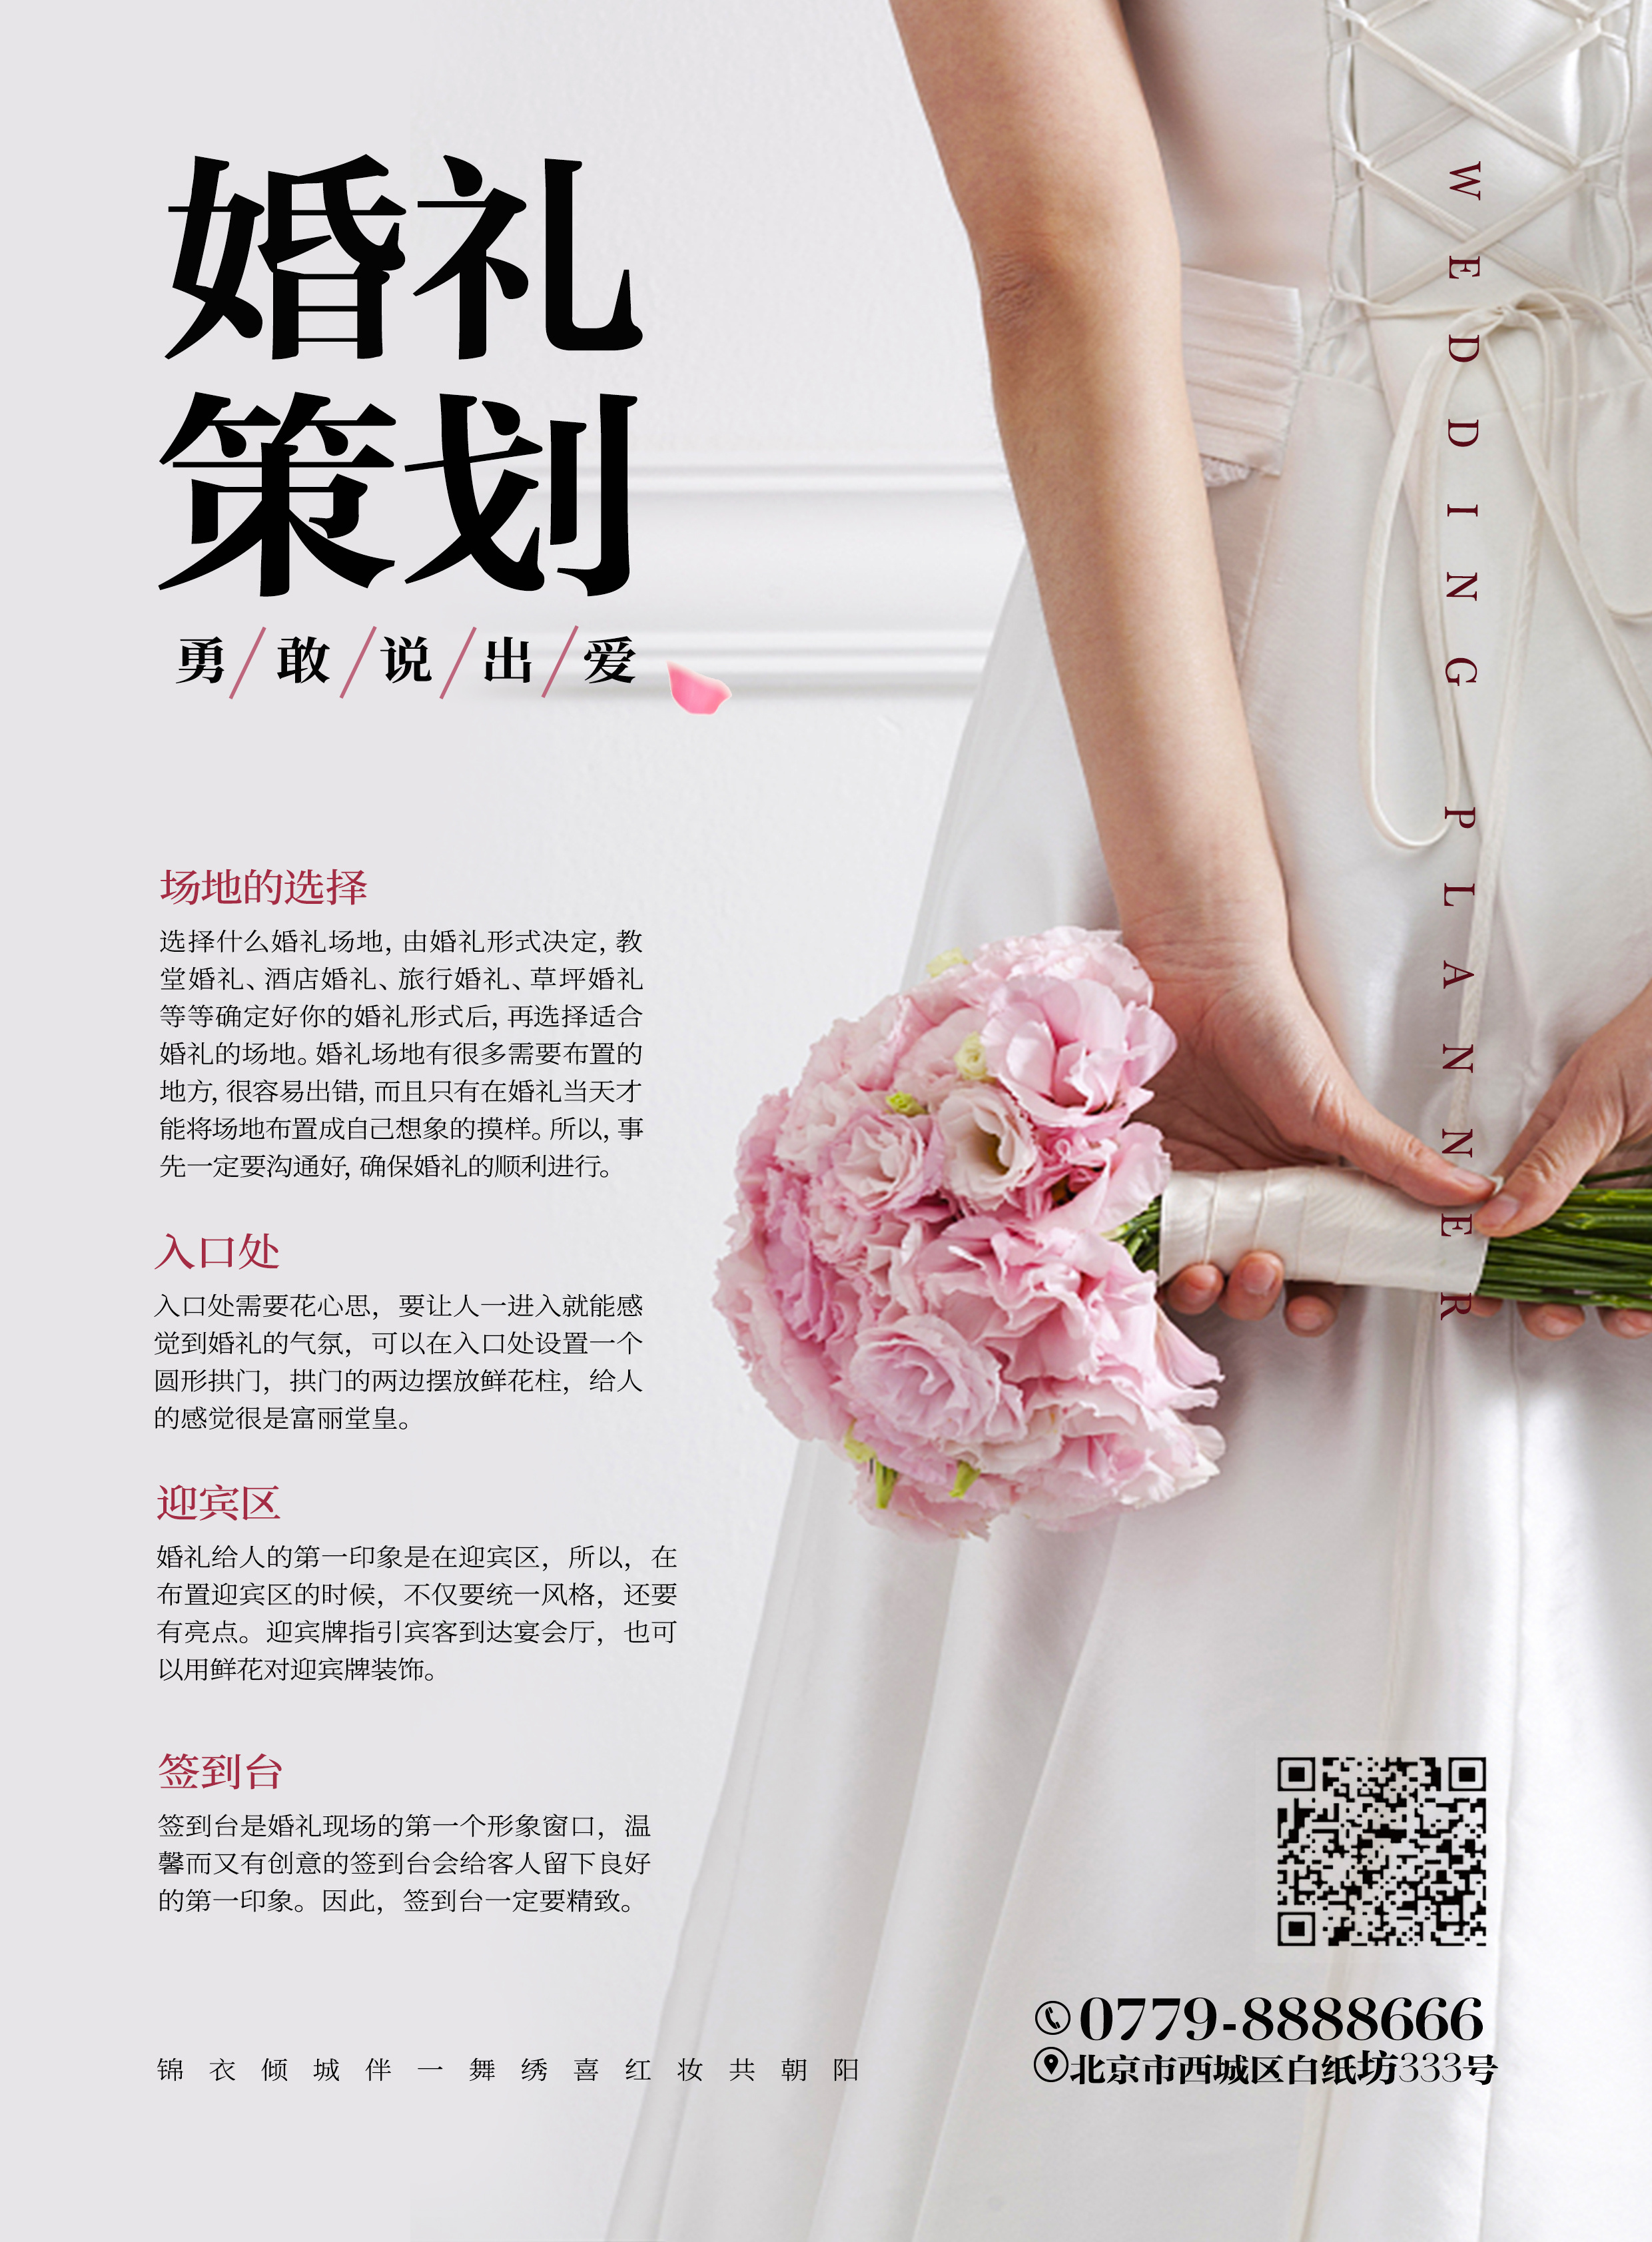 中西结合婚礼策划图片